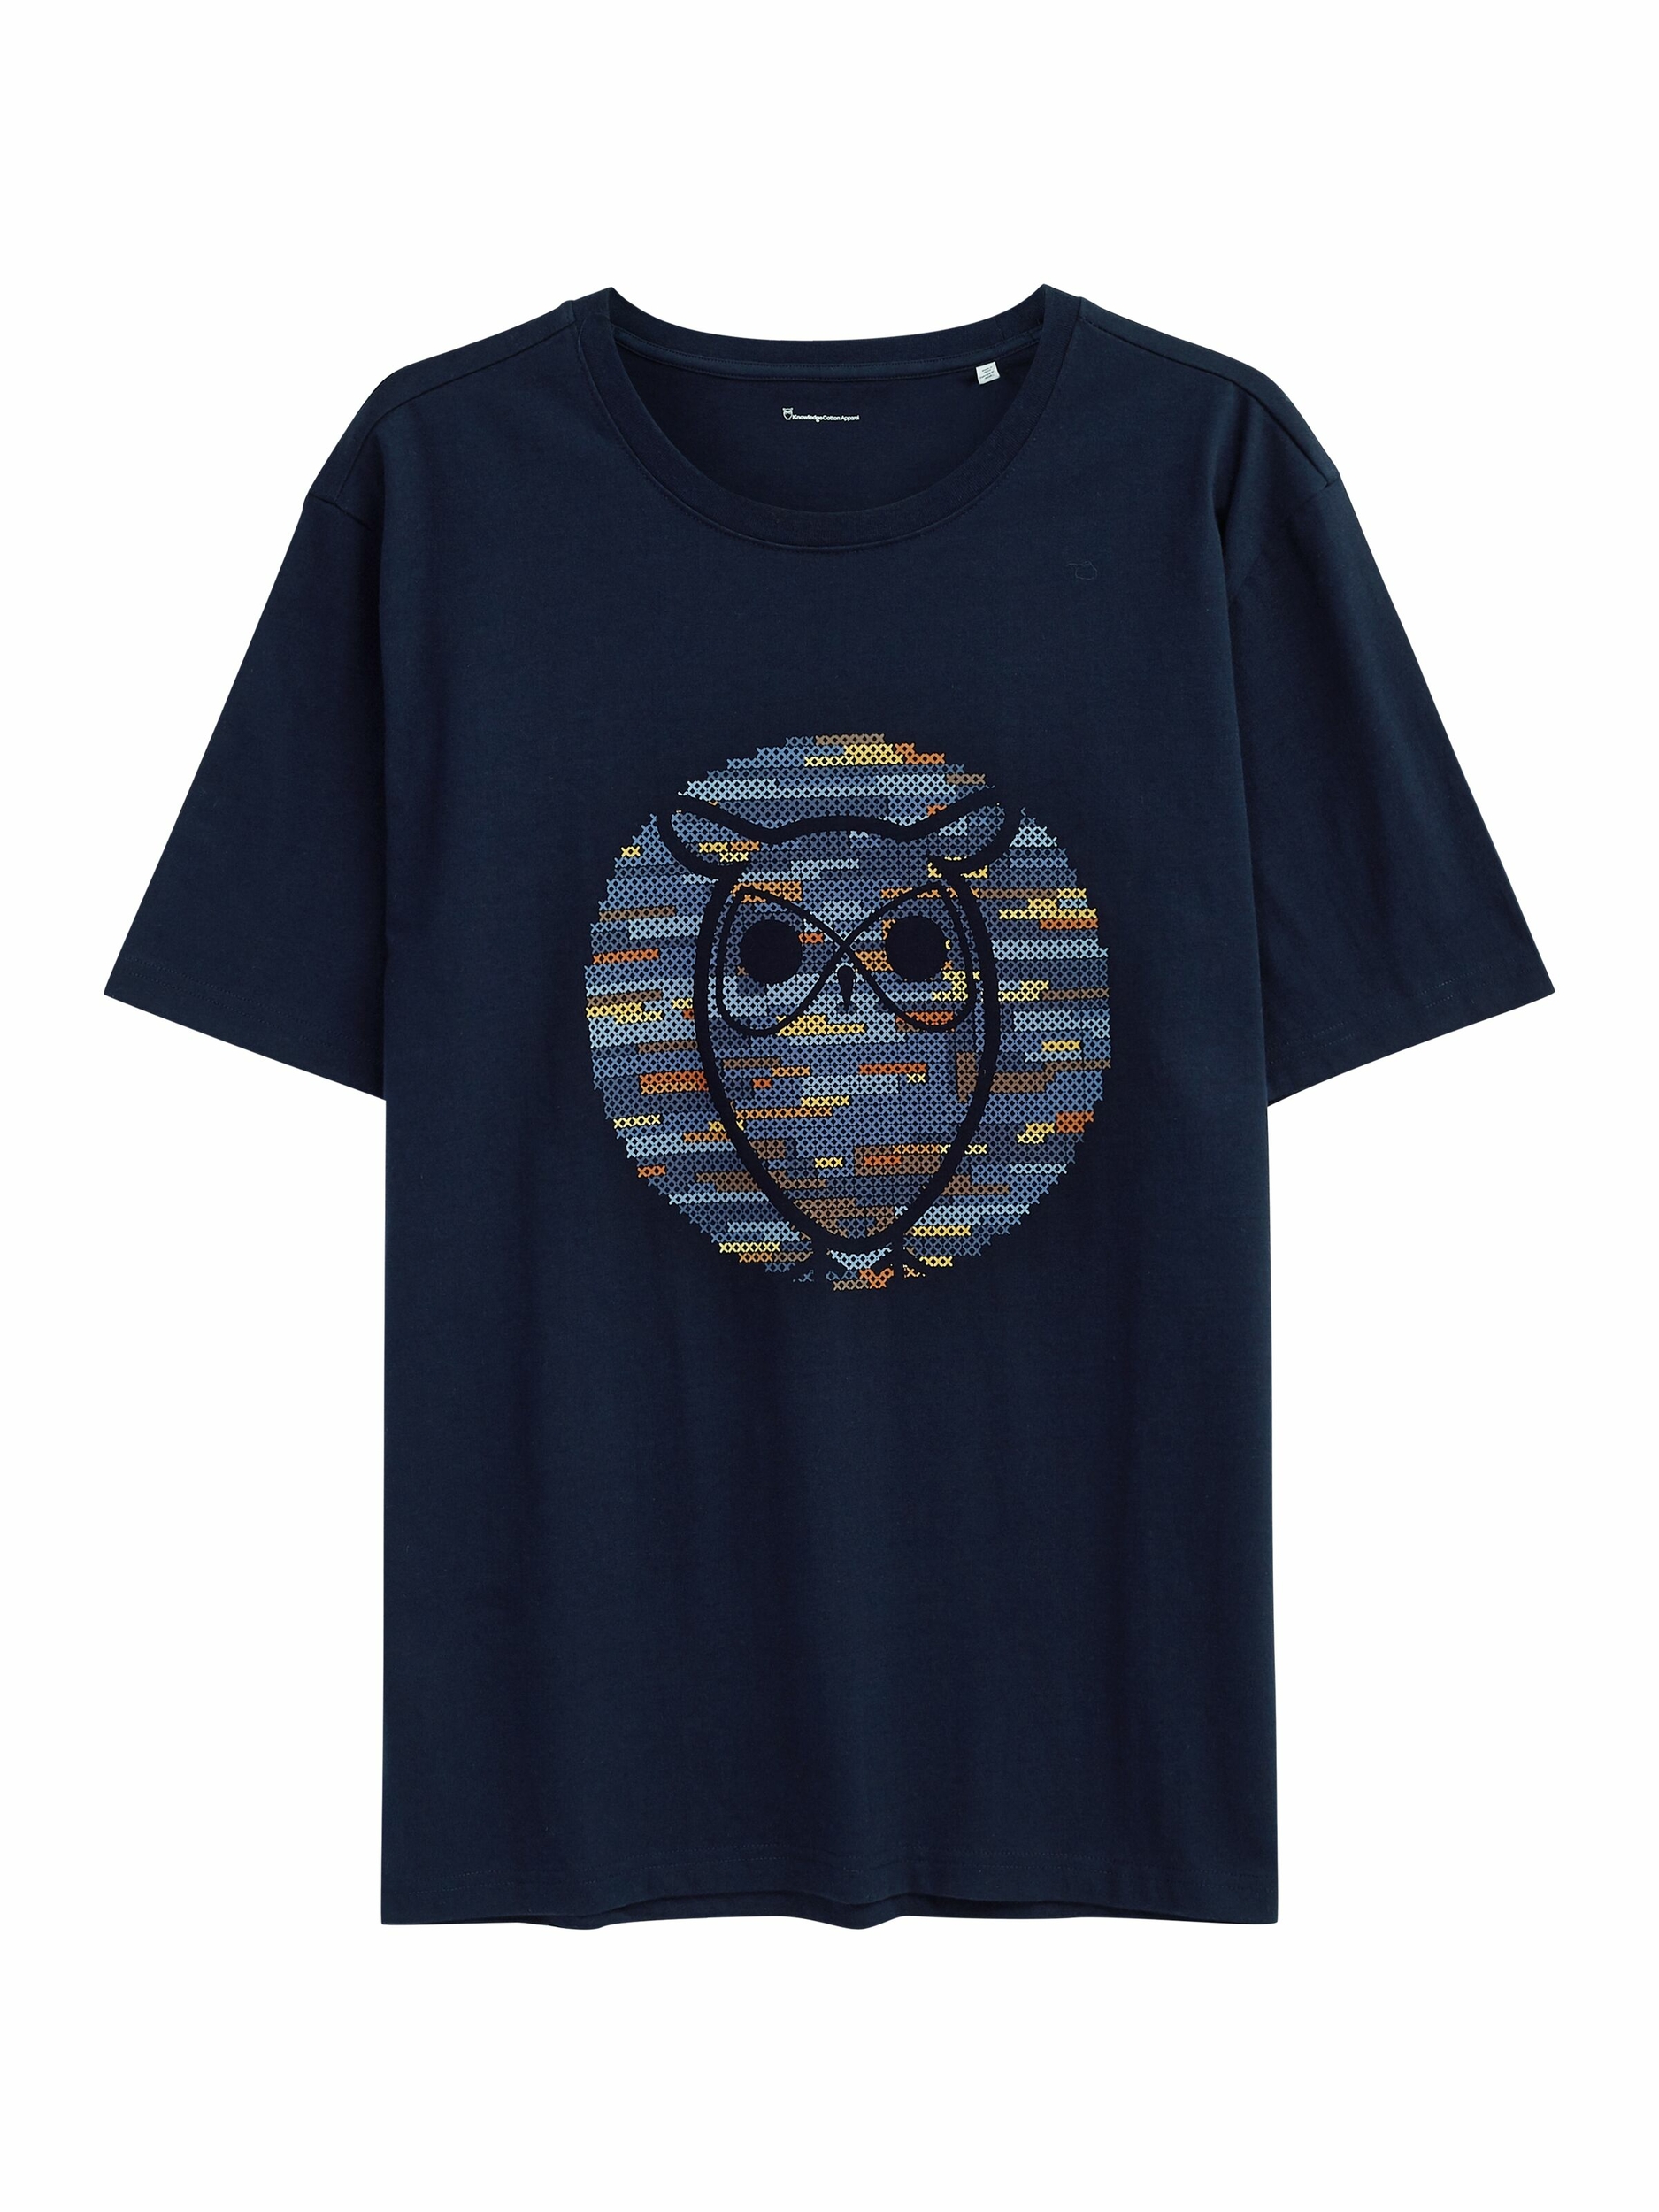 T-shirt Hibou cross stitch - bleu marine - coton biologique - Knowledge Cotton Apparel 05